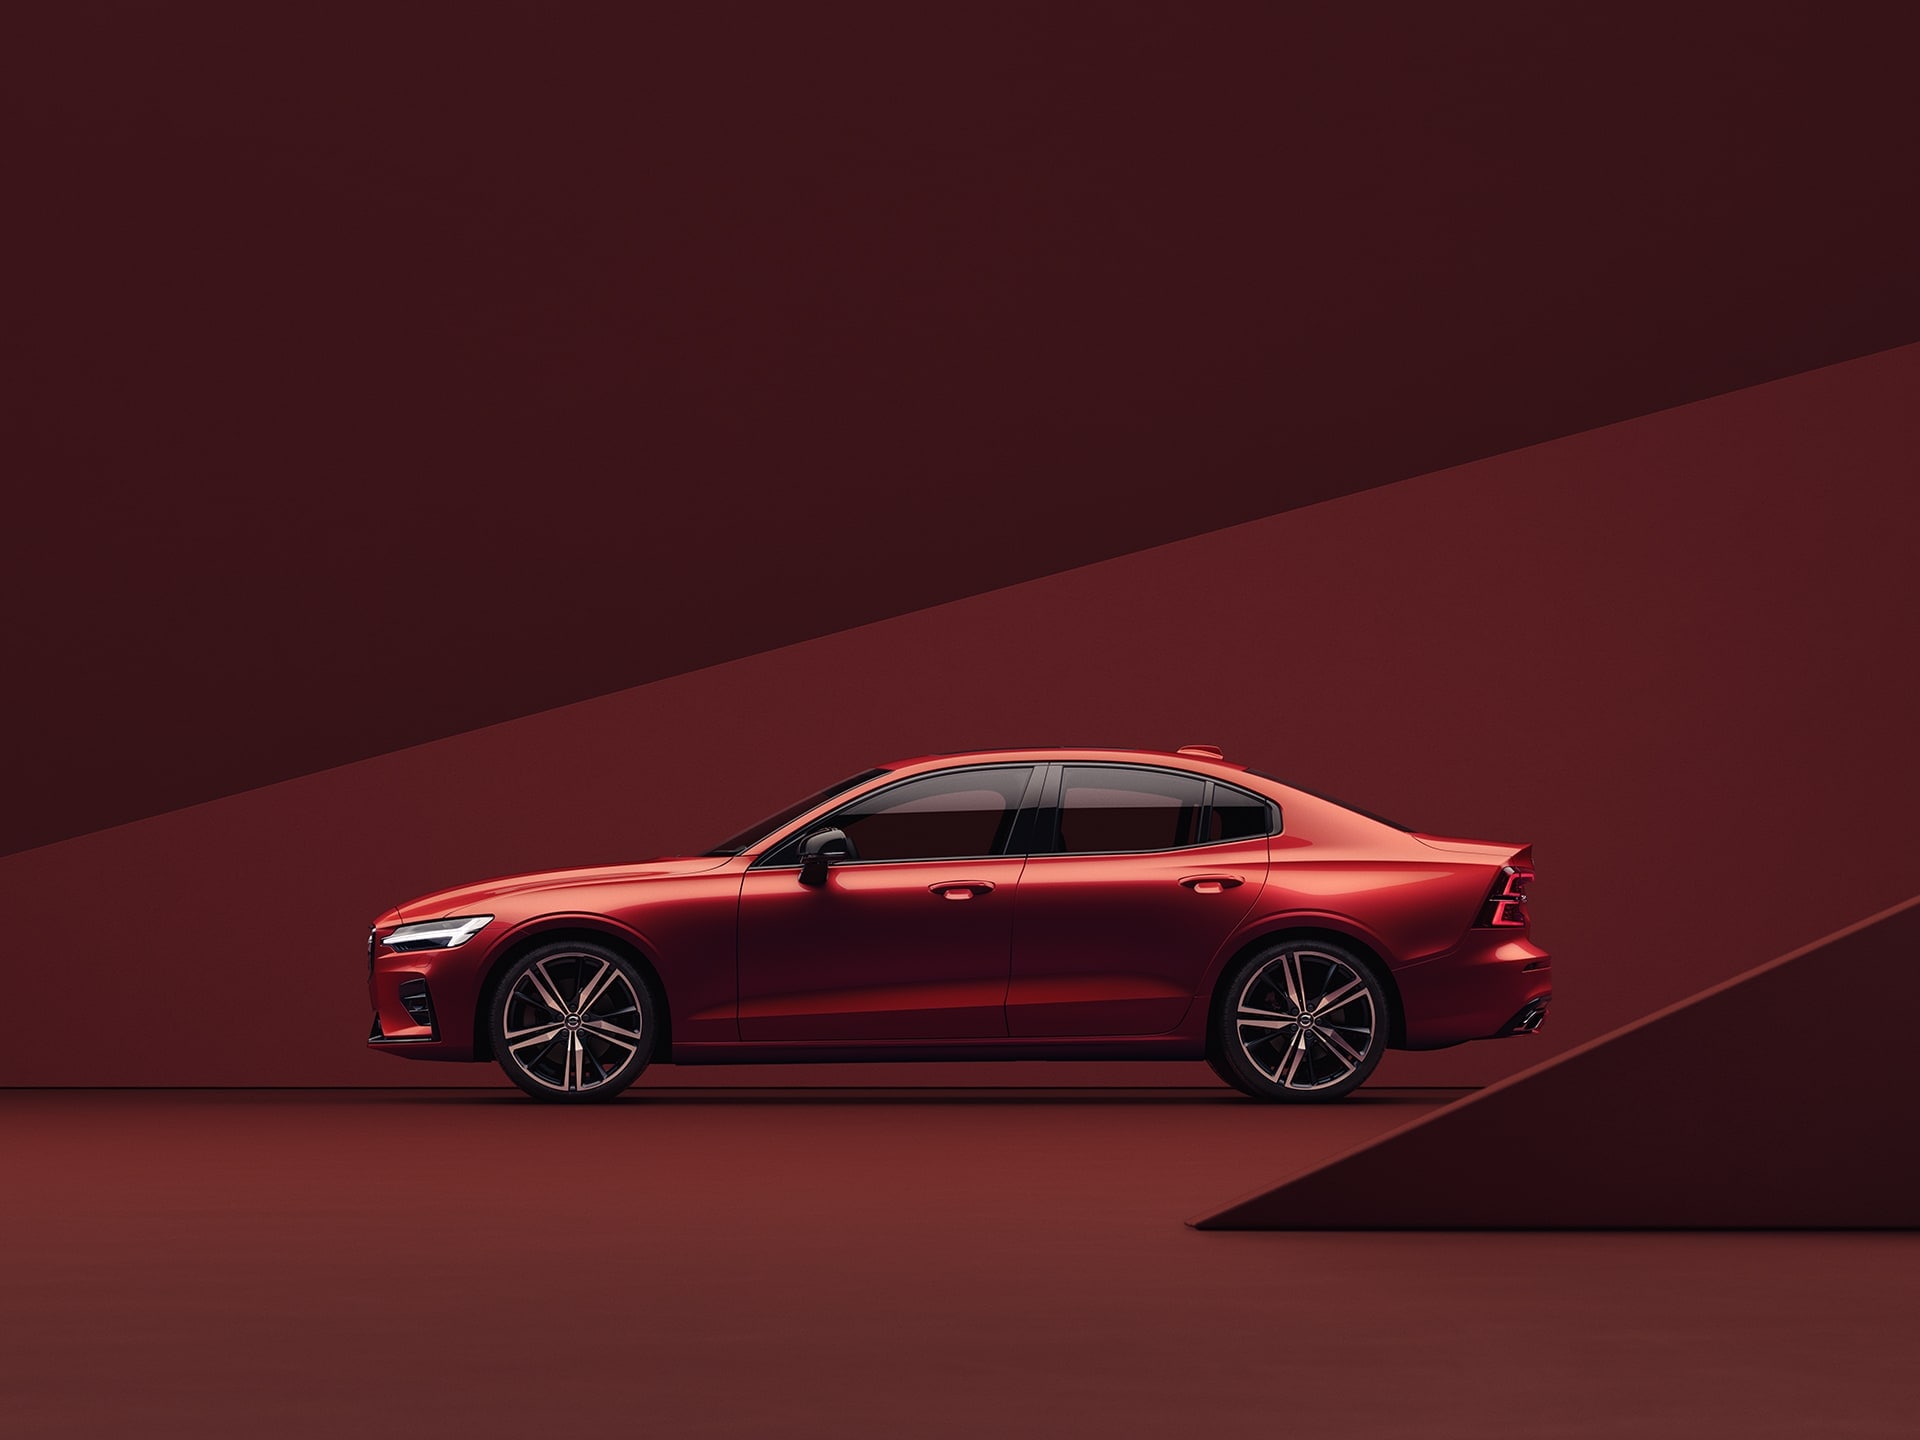 Um sedan Volvo S60 em vermelho, estacionado num ambiente da mesma tonalidade.